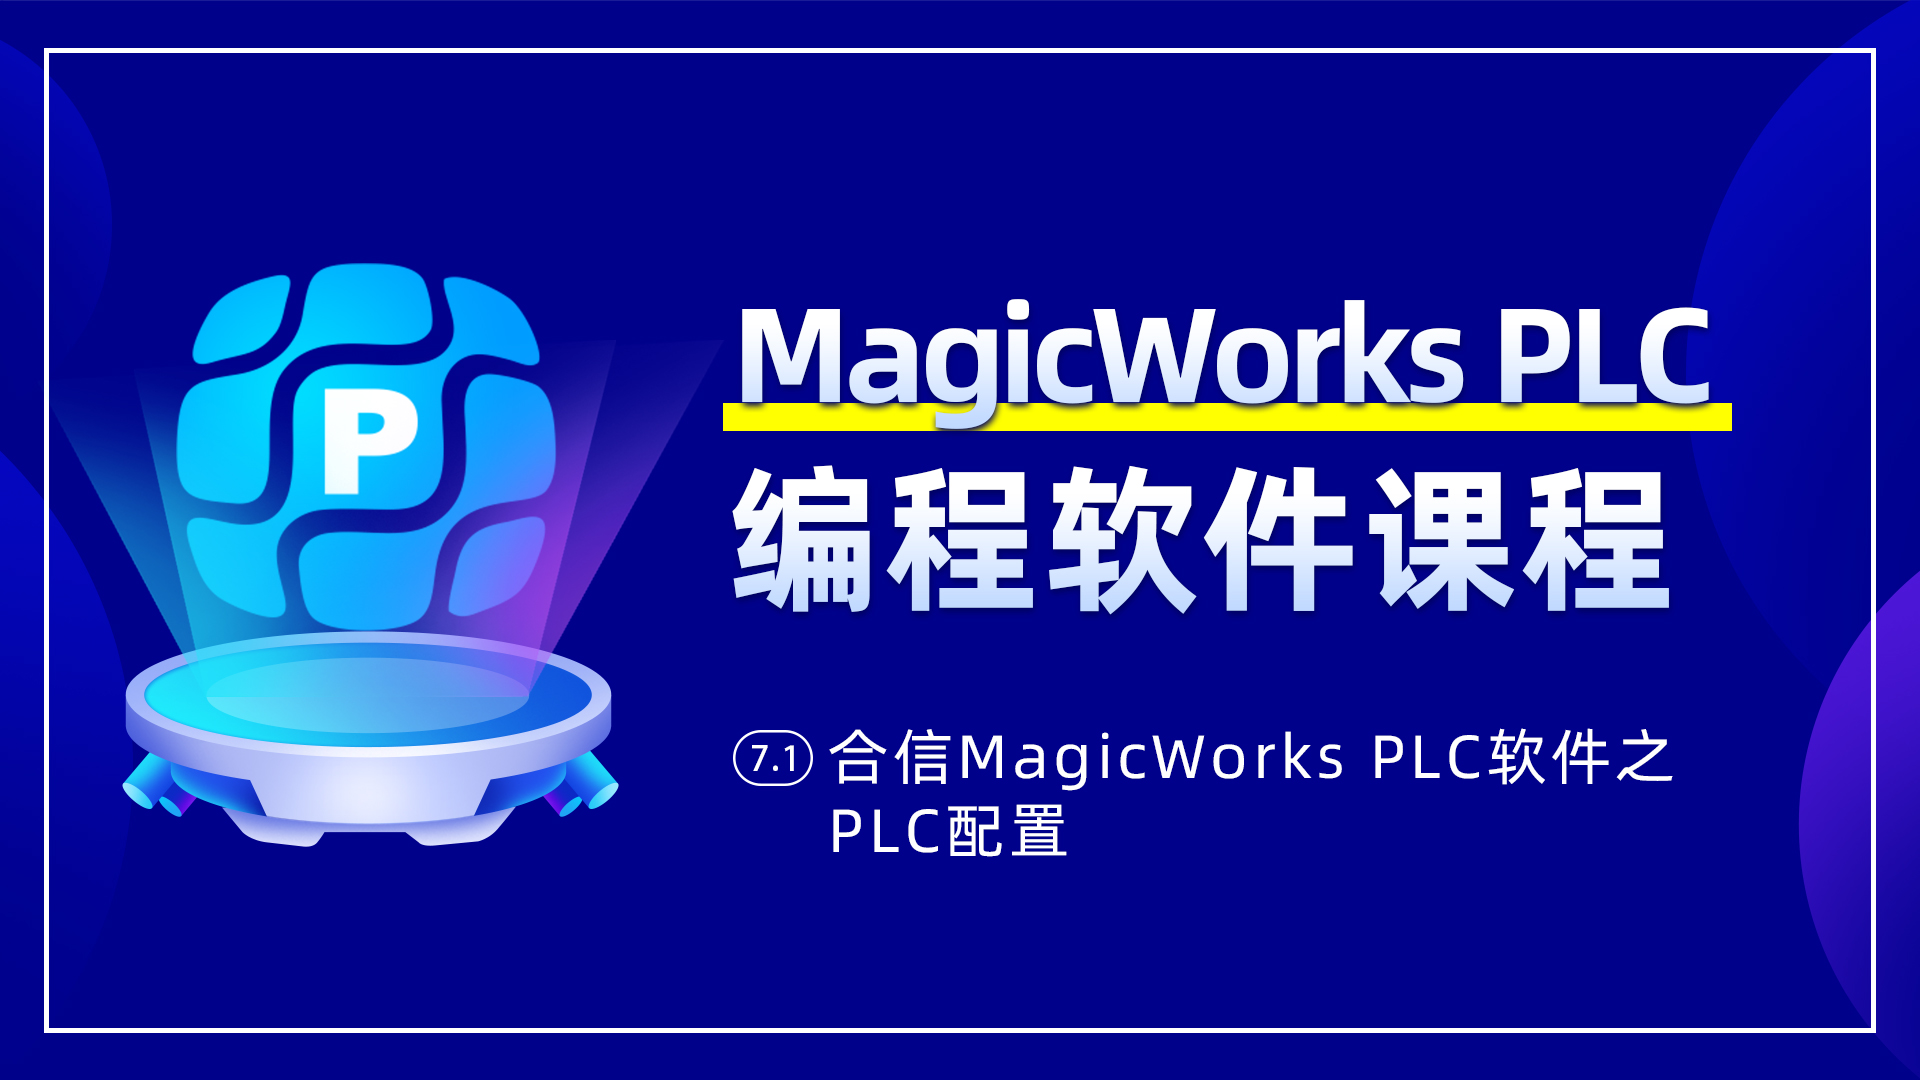 7.1、合信MagicWorks PLC軟件PLC配置之系統塊配置